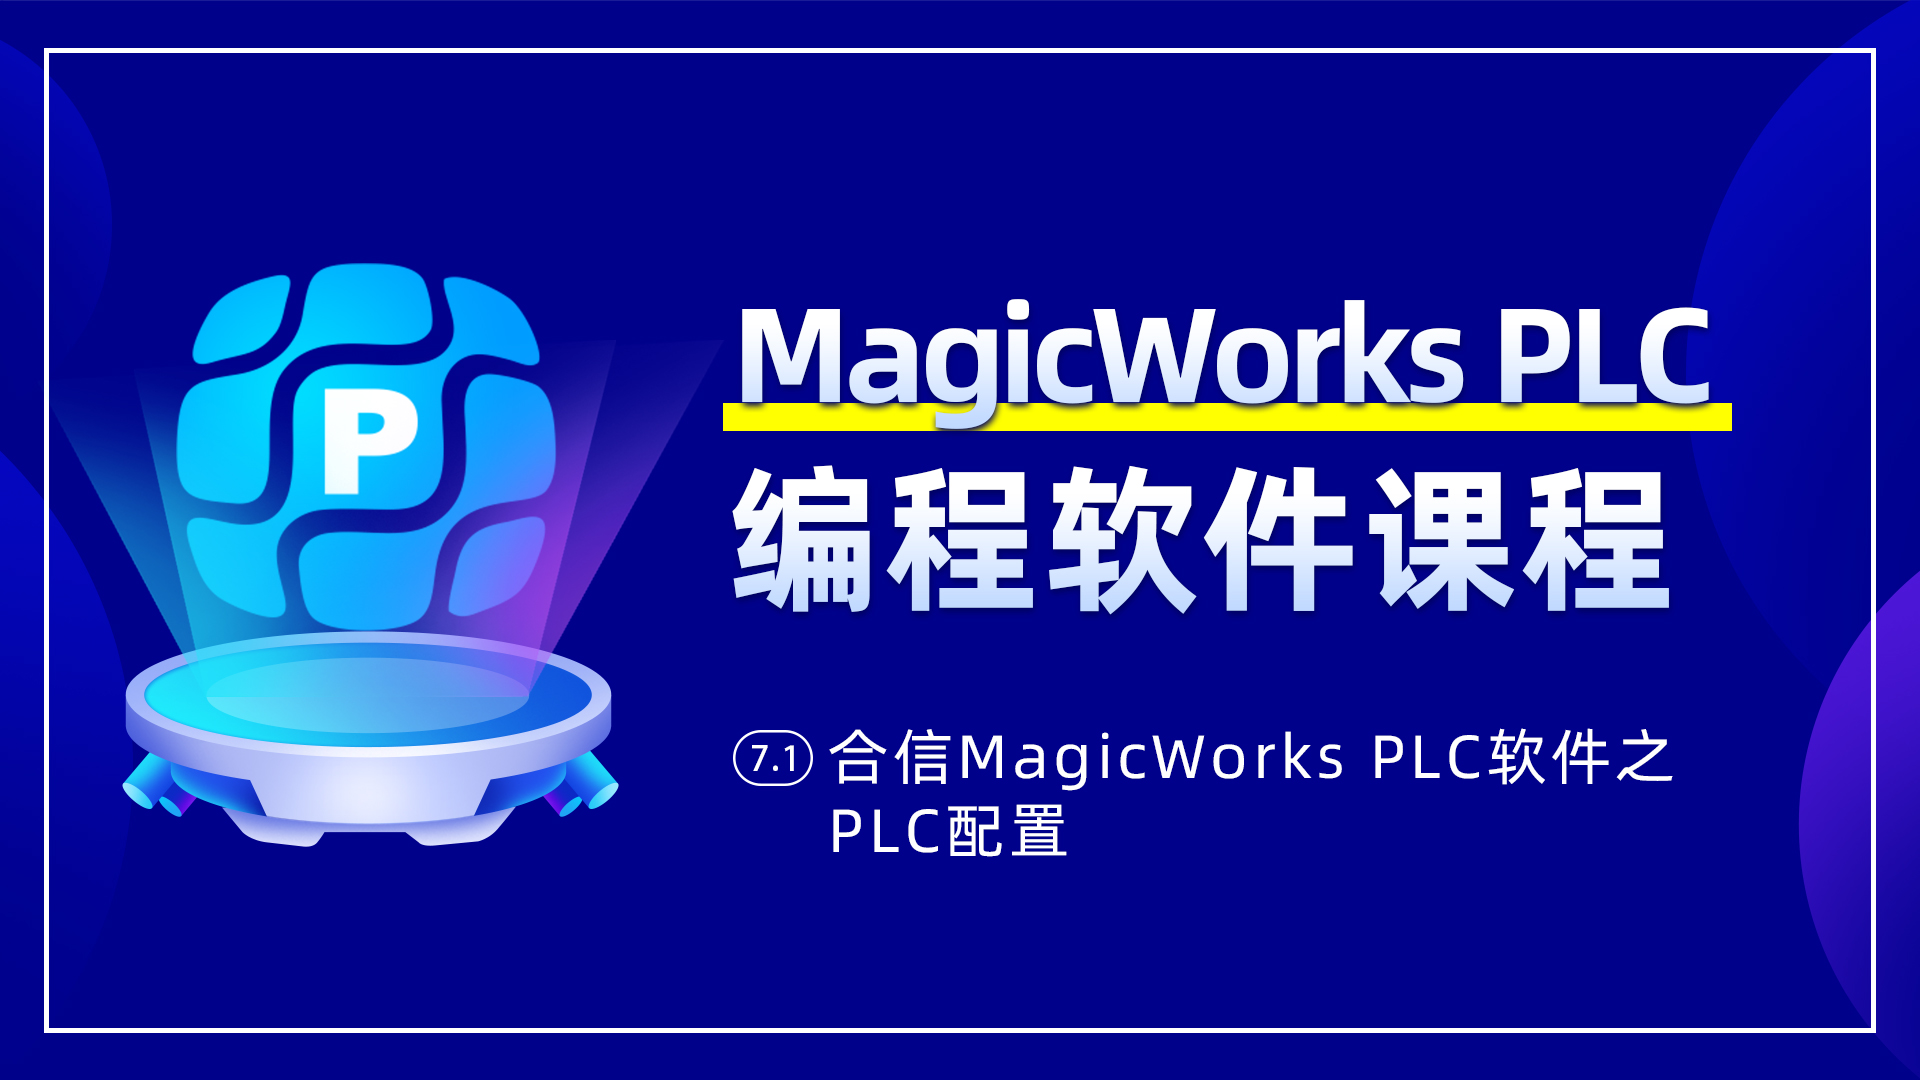 7.1、合信MagicWorks PLC軟件PLC配置之系統塊配置